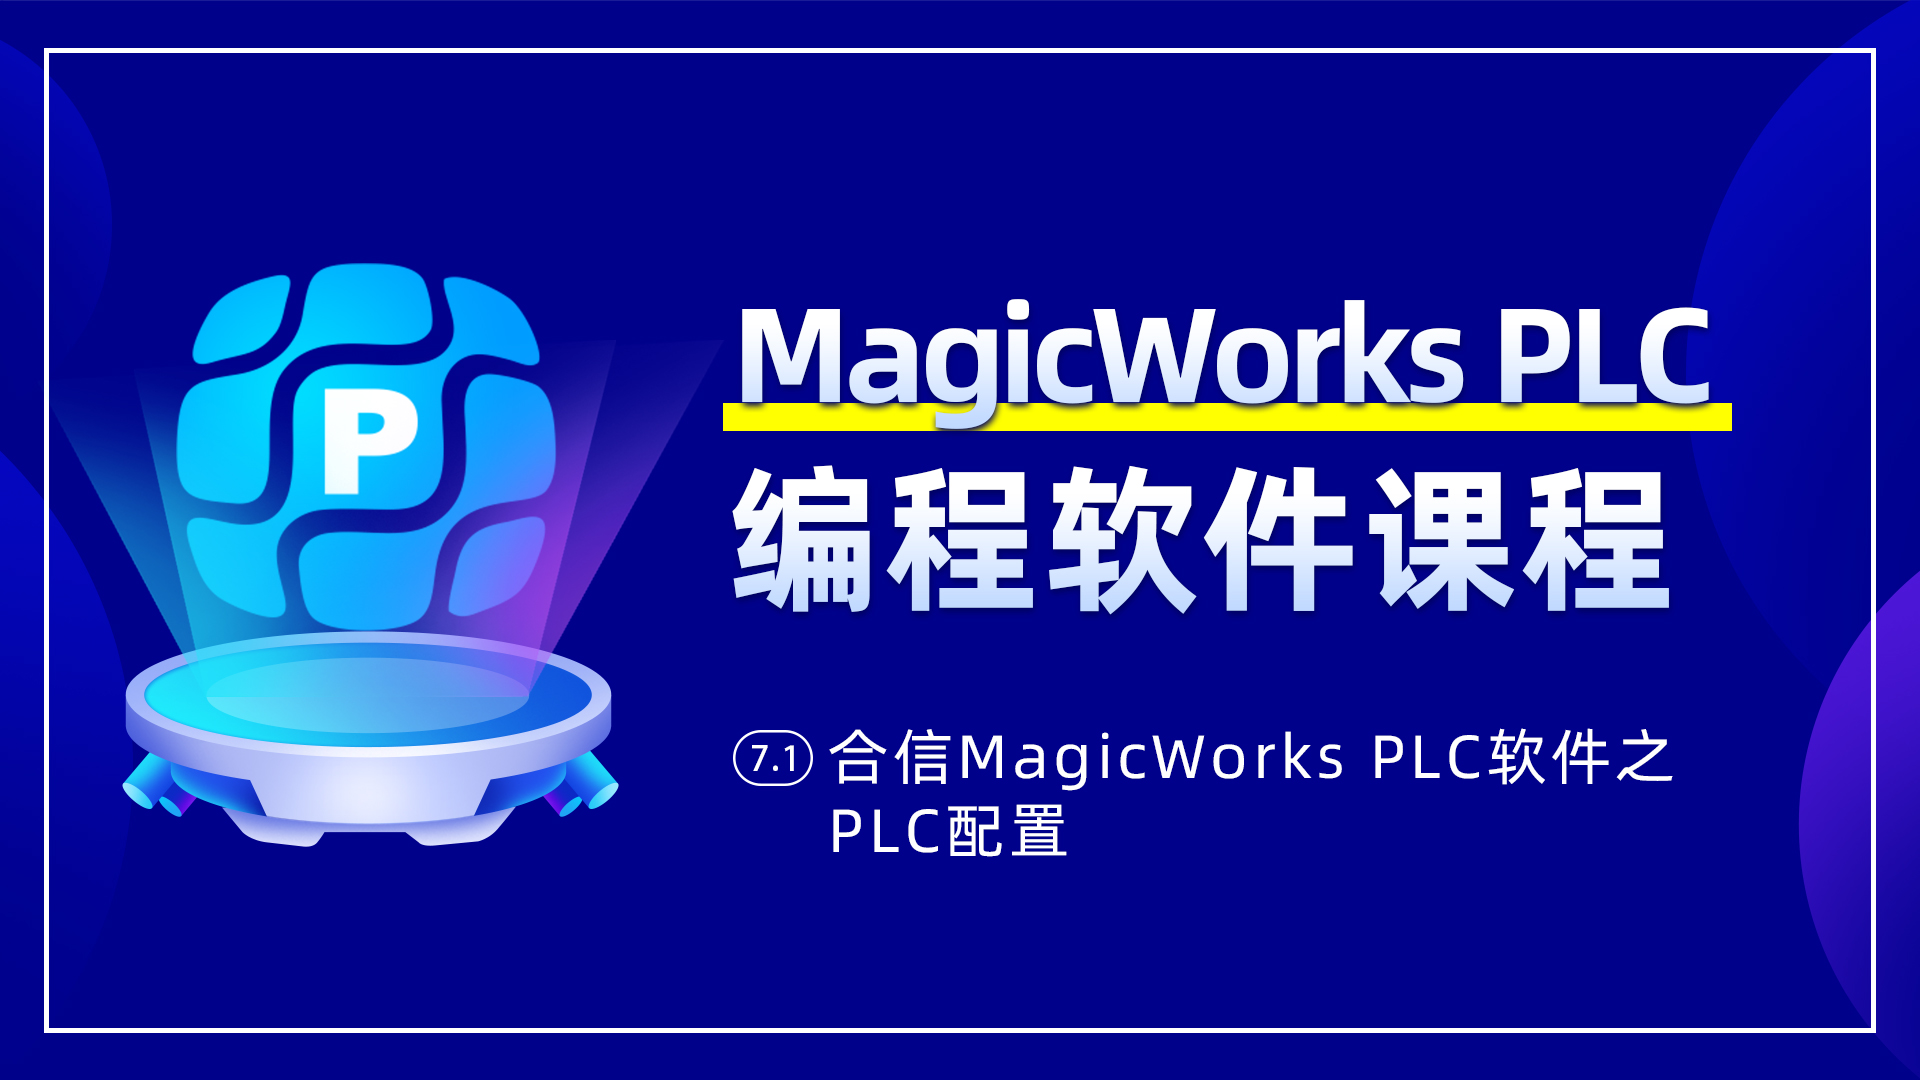 7.1、合信MagicWorks PLC軟件PLC配置之系統塊配置